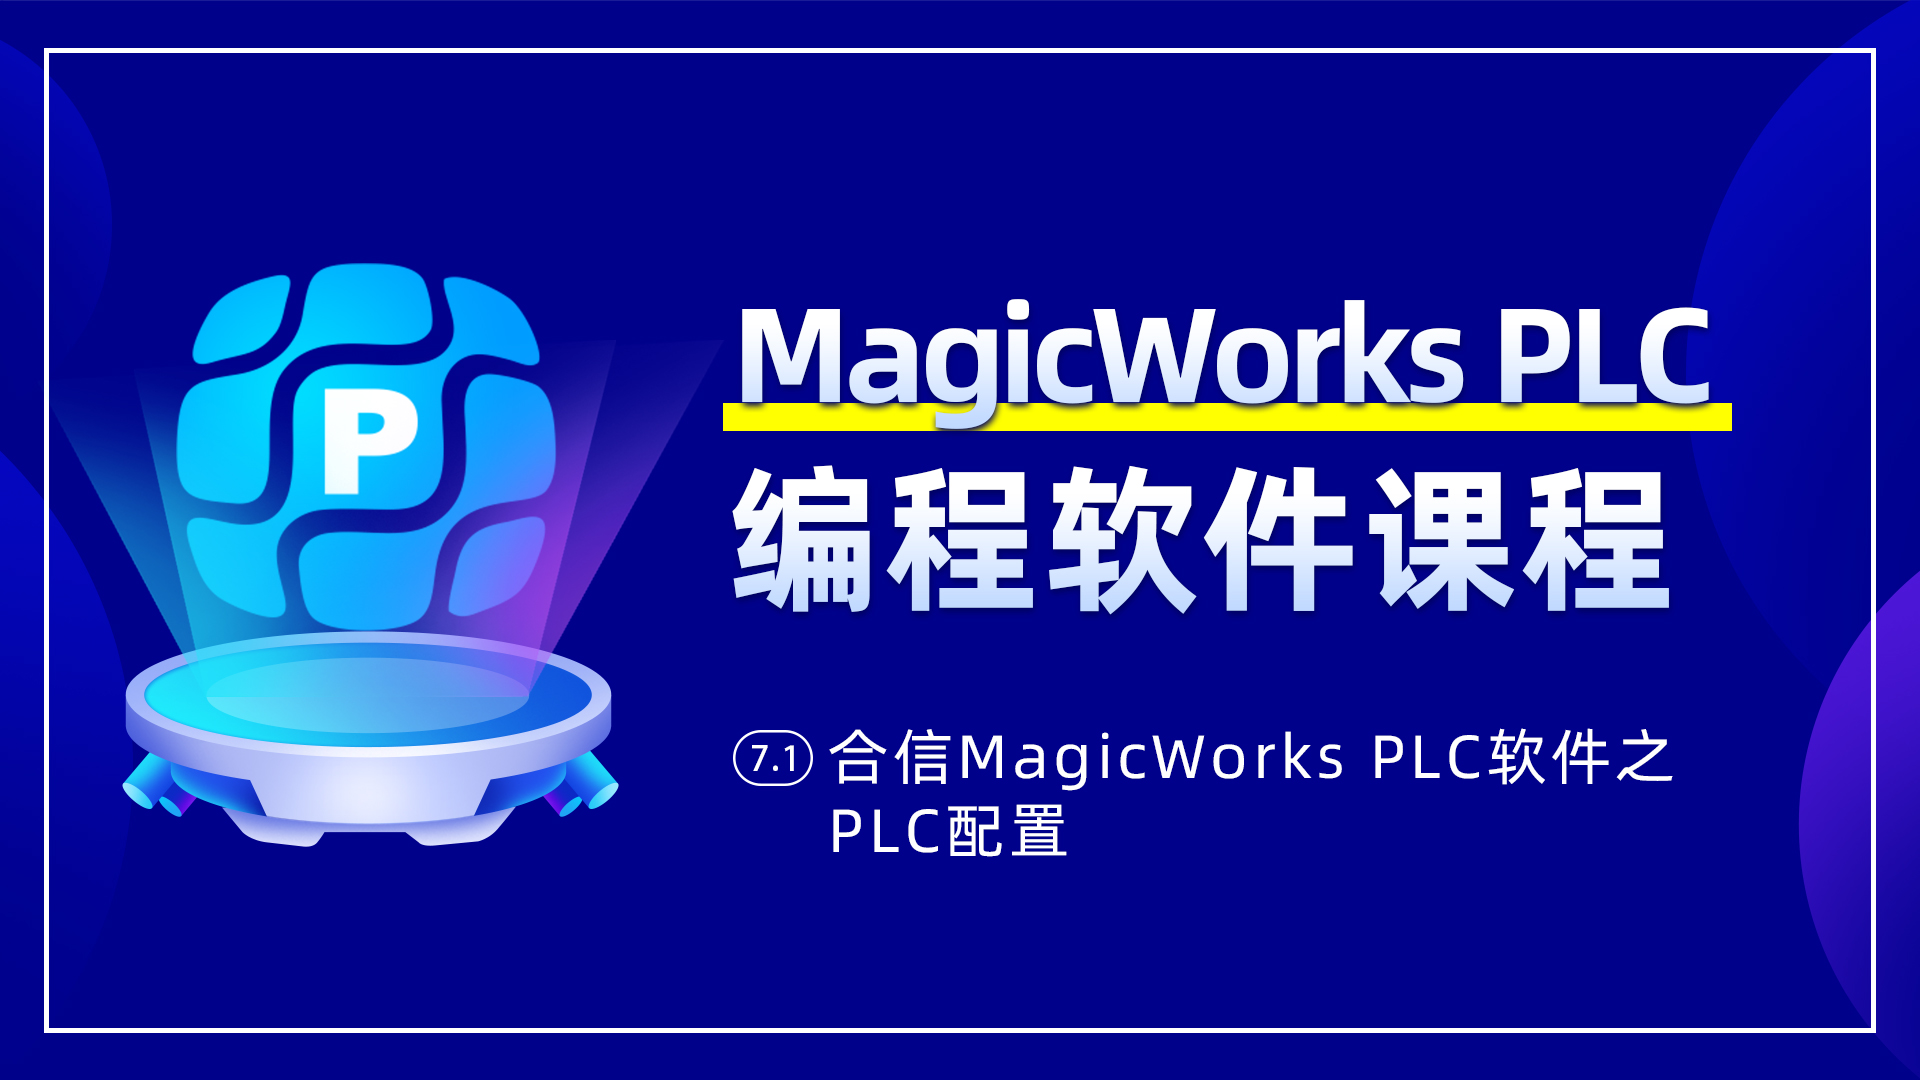 7.1、合信MagicWorks PLC軟件PLC配置之系統塊配置